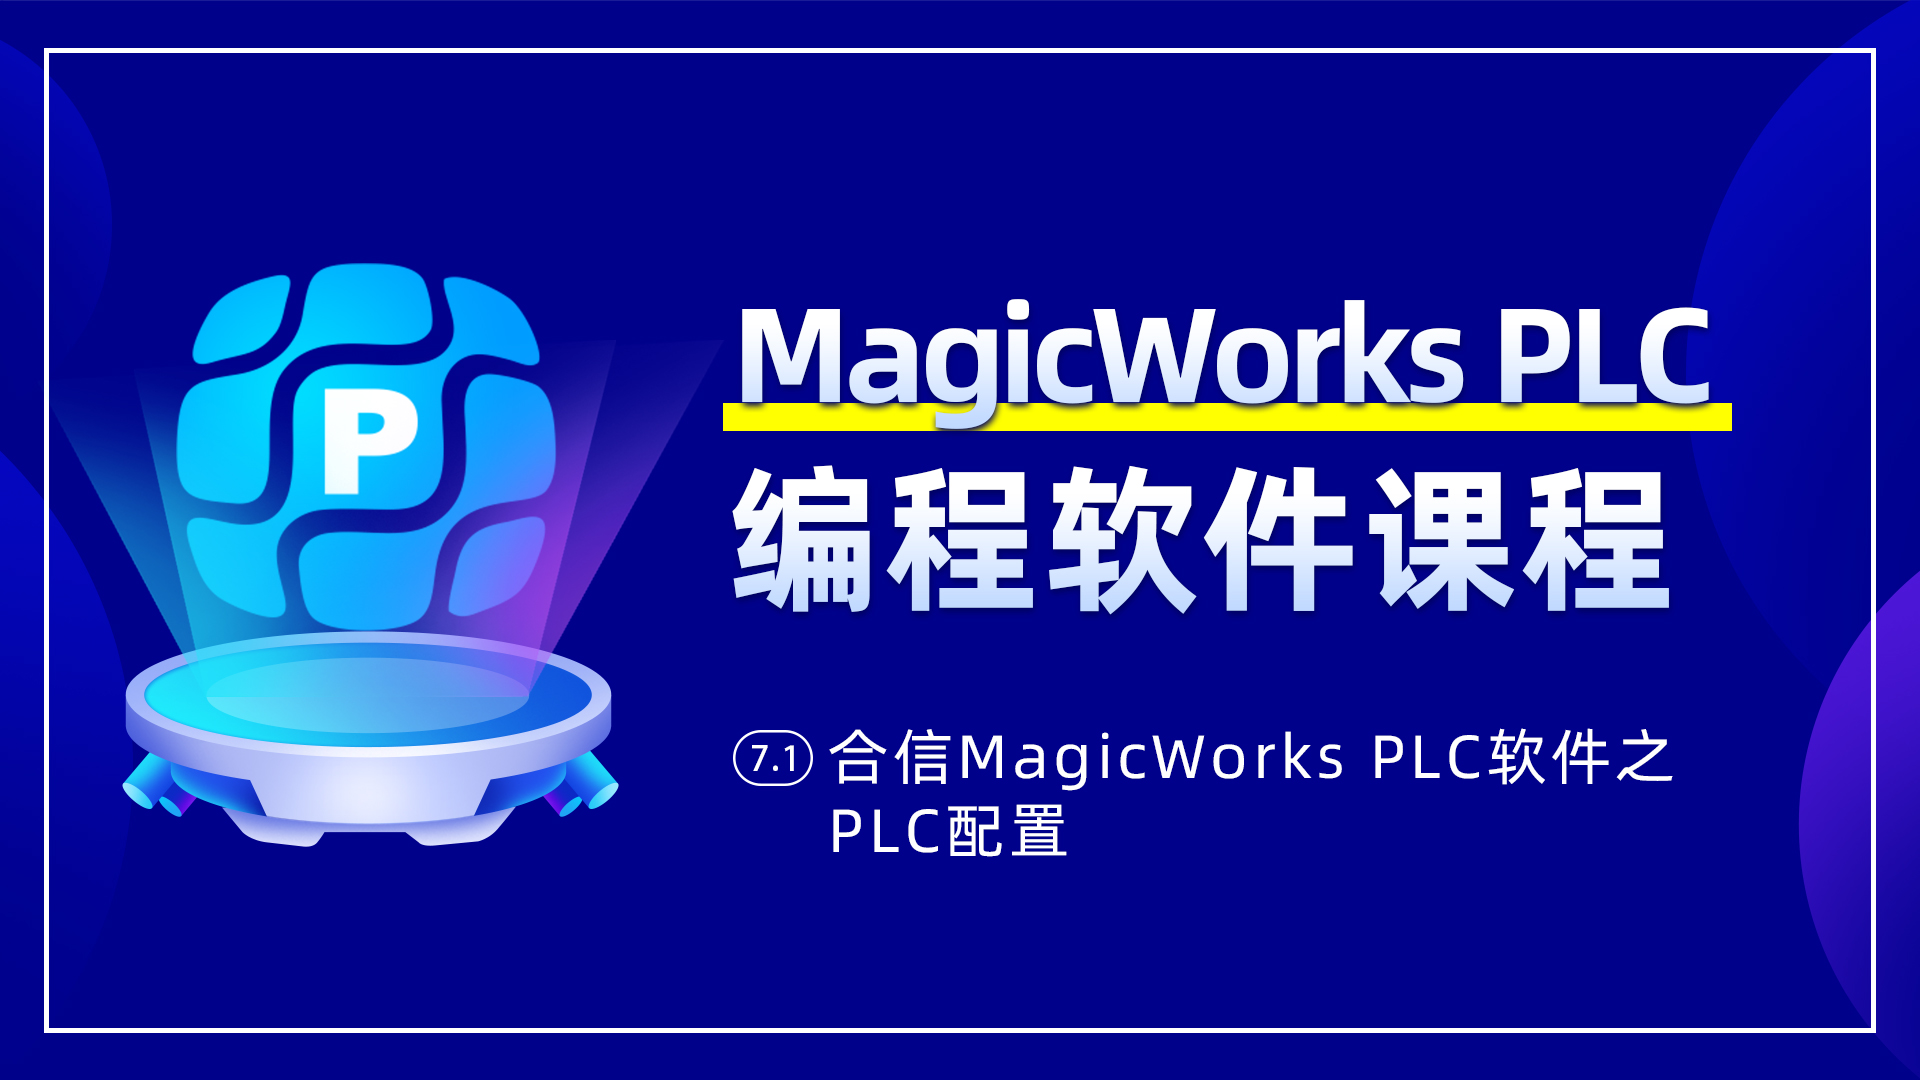 7.1、合信MagicWorks PLC軟件PLC配置之系統塊配置